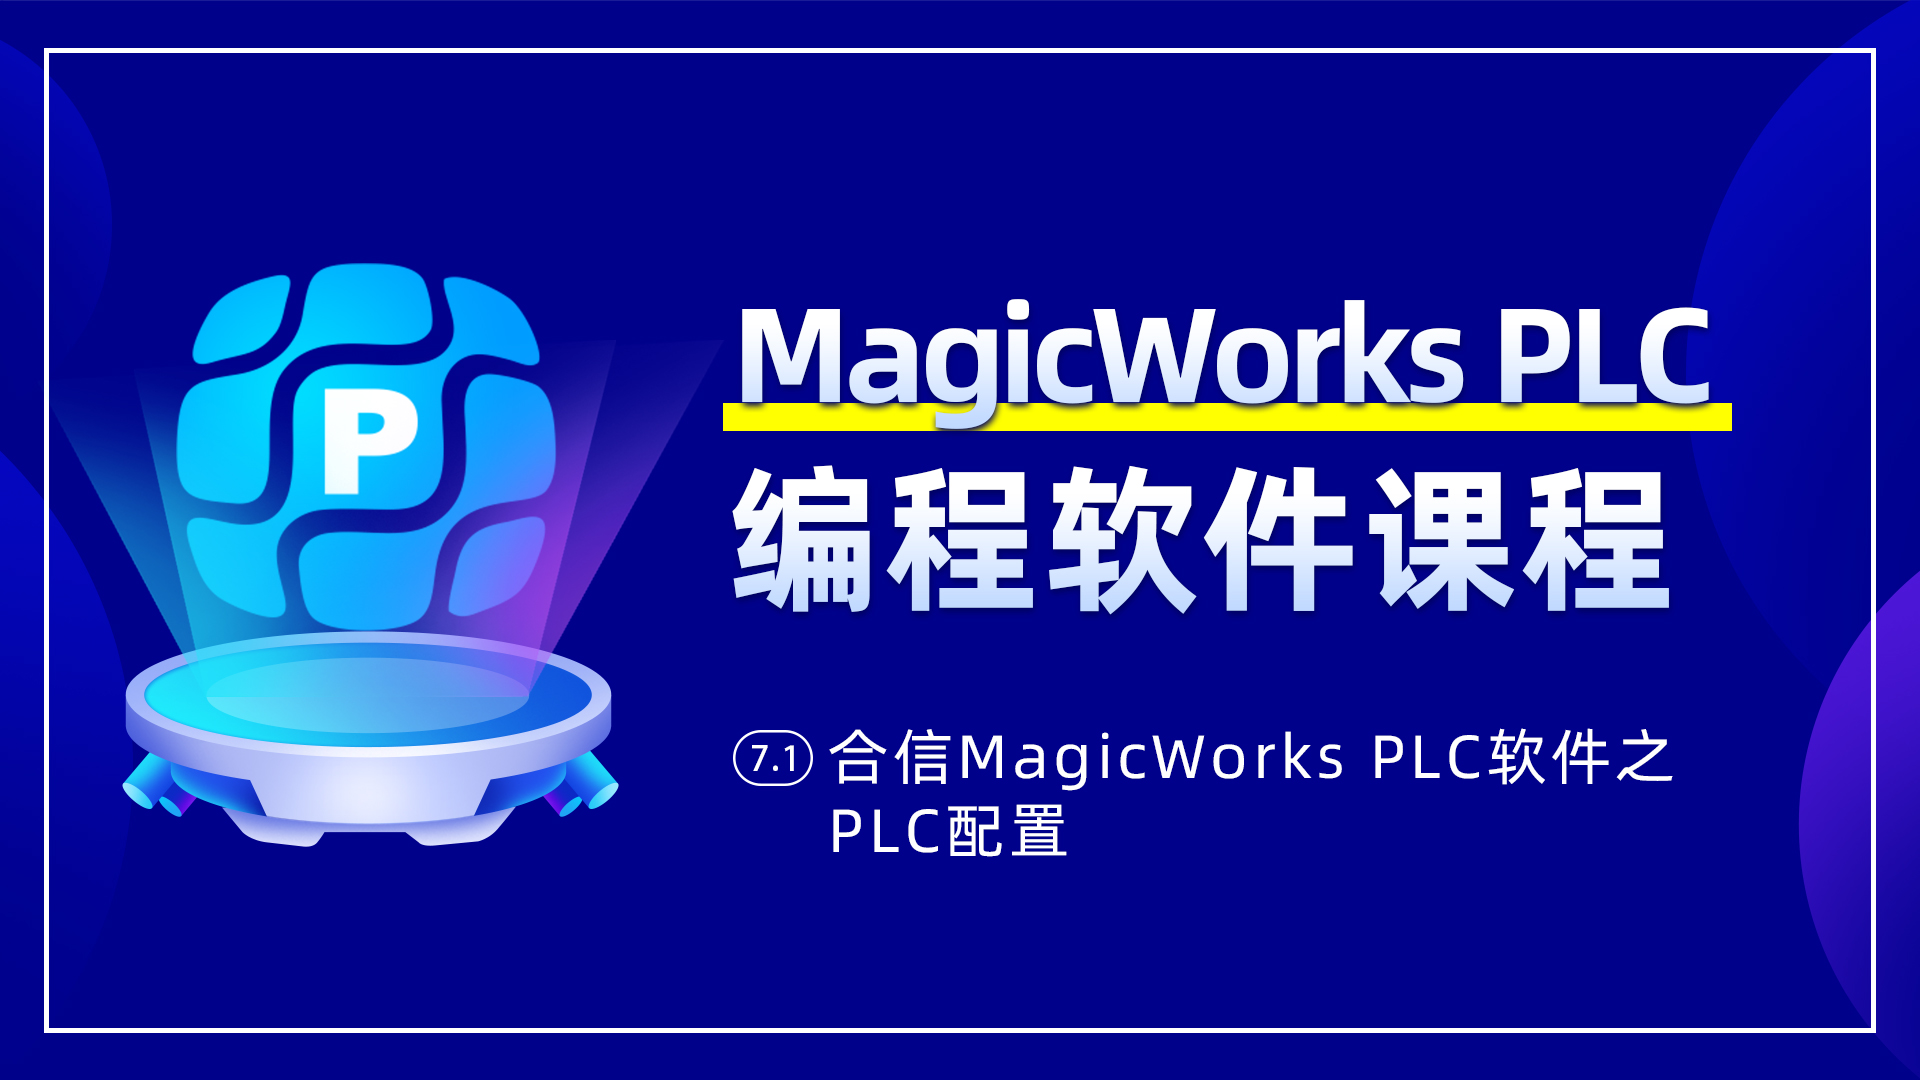 7.1、合信MagicWorks PLC軟件PLC配置之系統塊配置